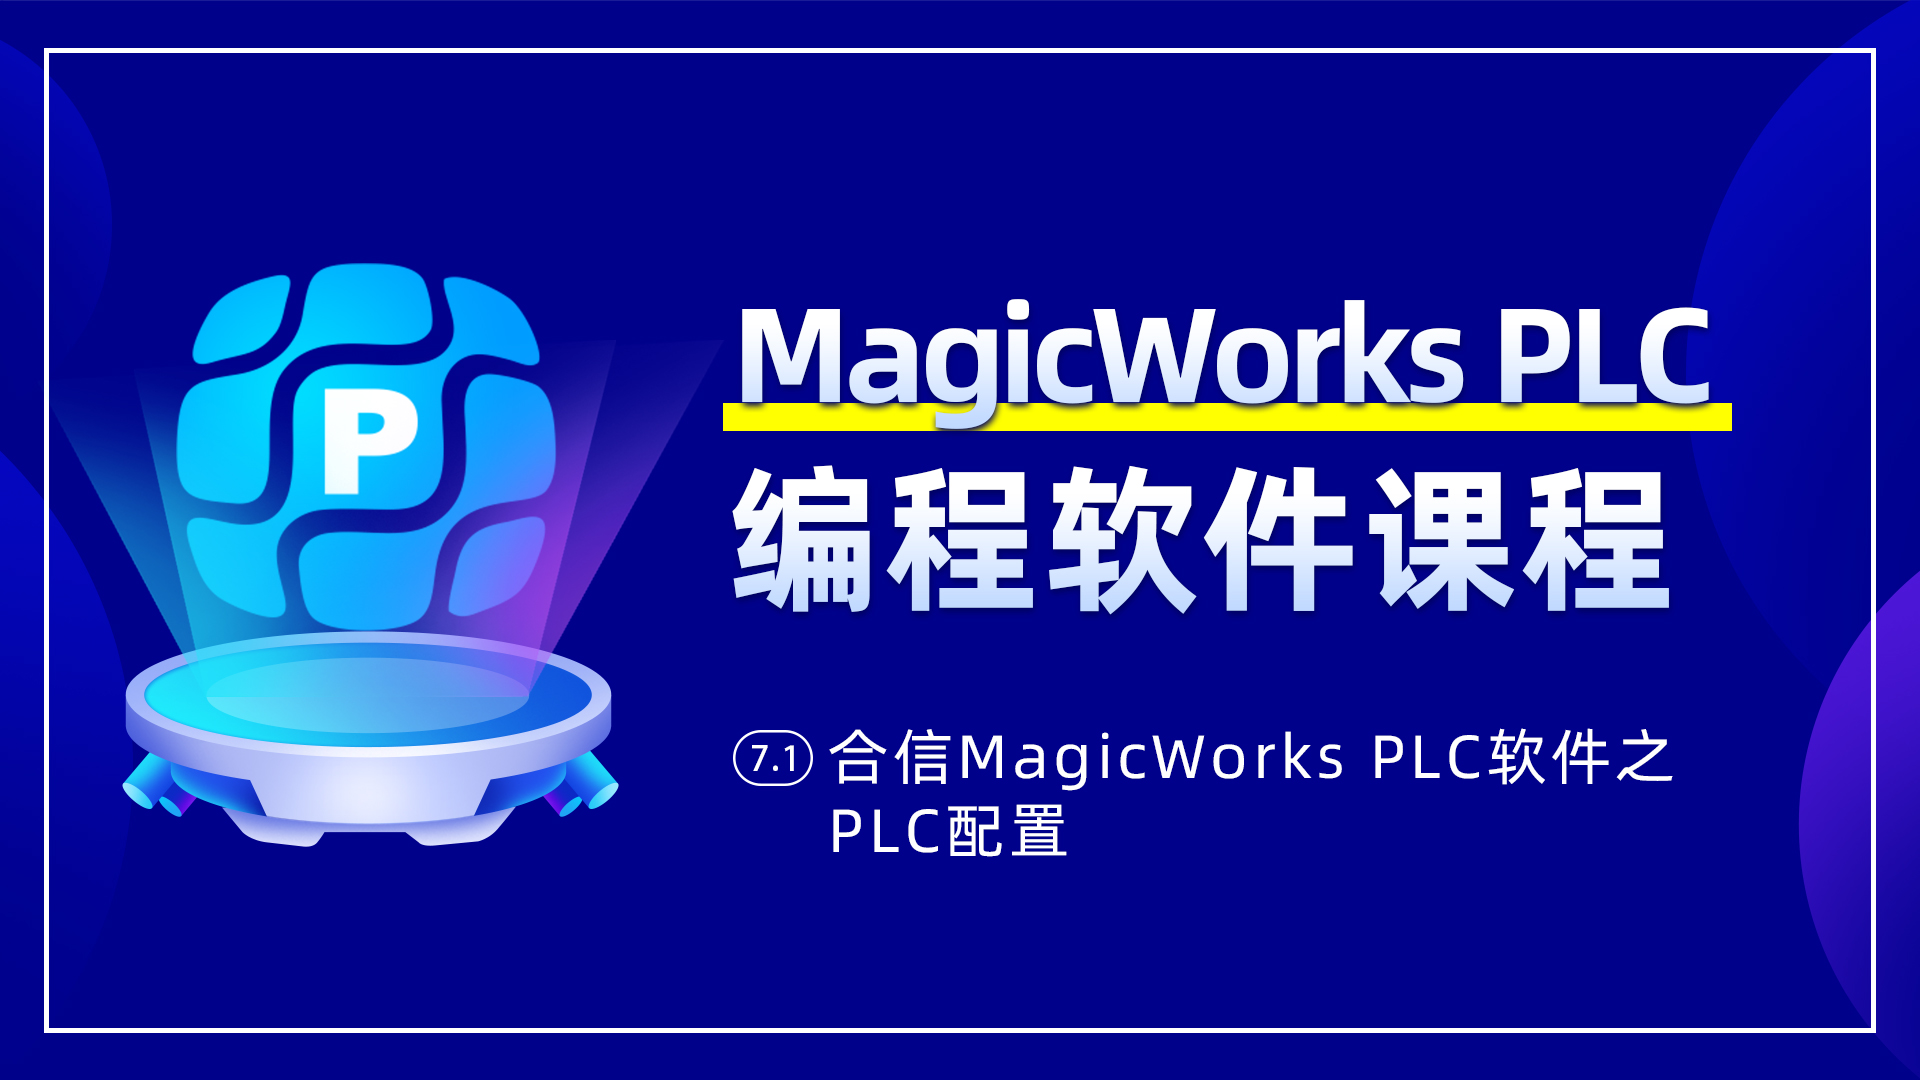 7.1、合信MagicWorks PLC軟件PLC配置之系統塊配置